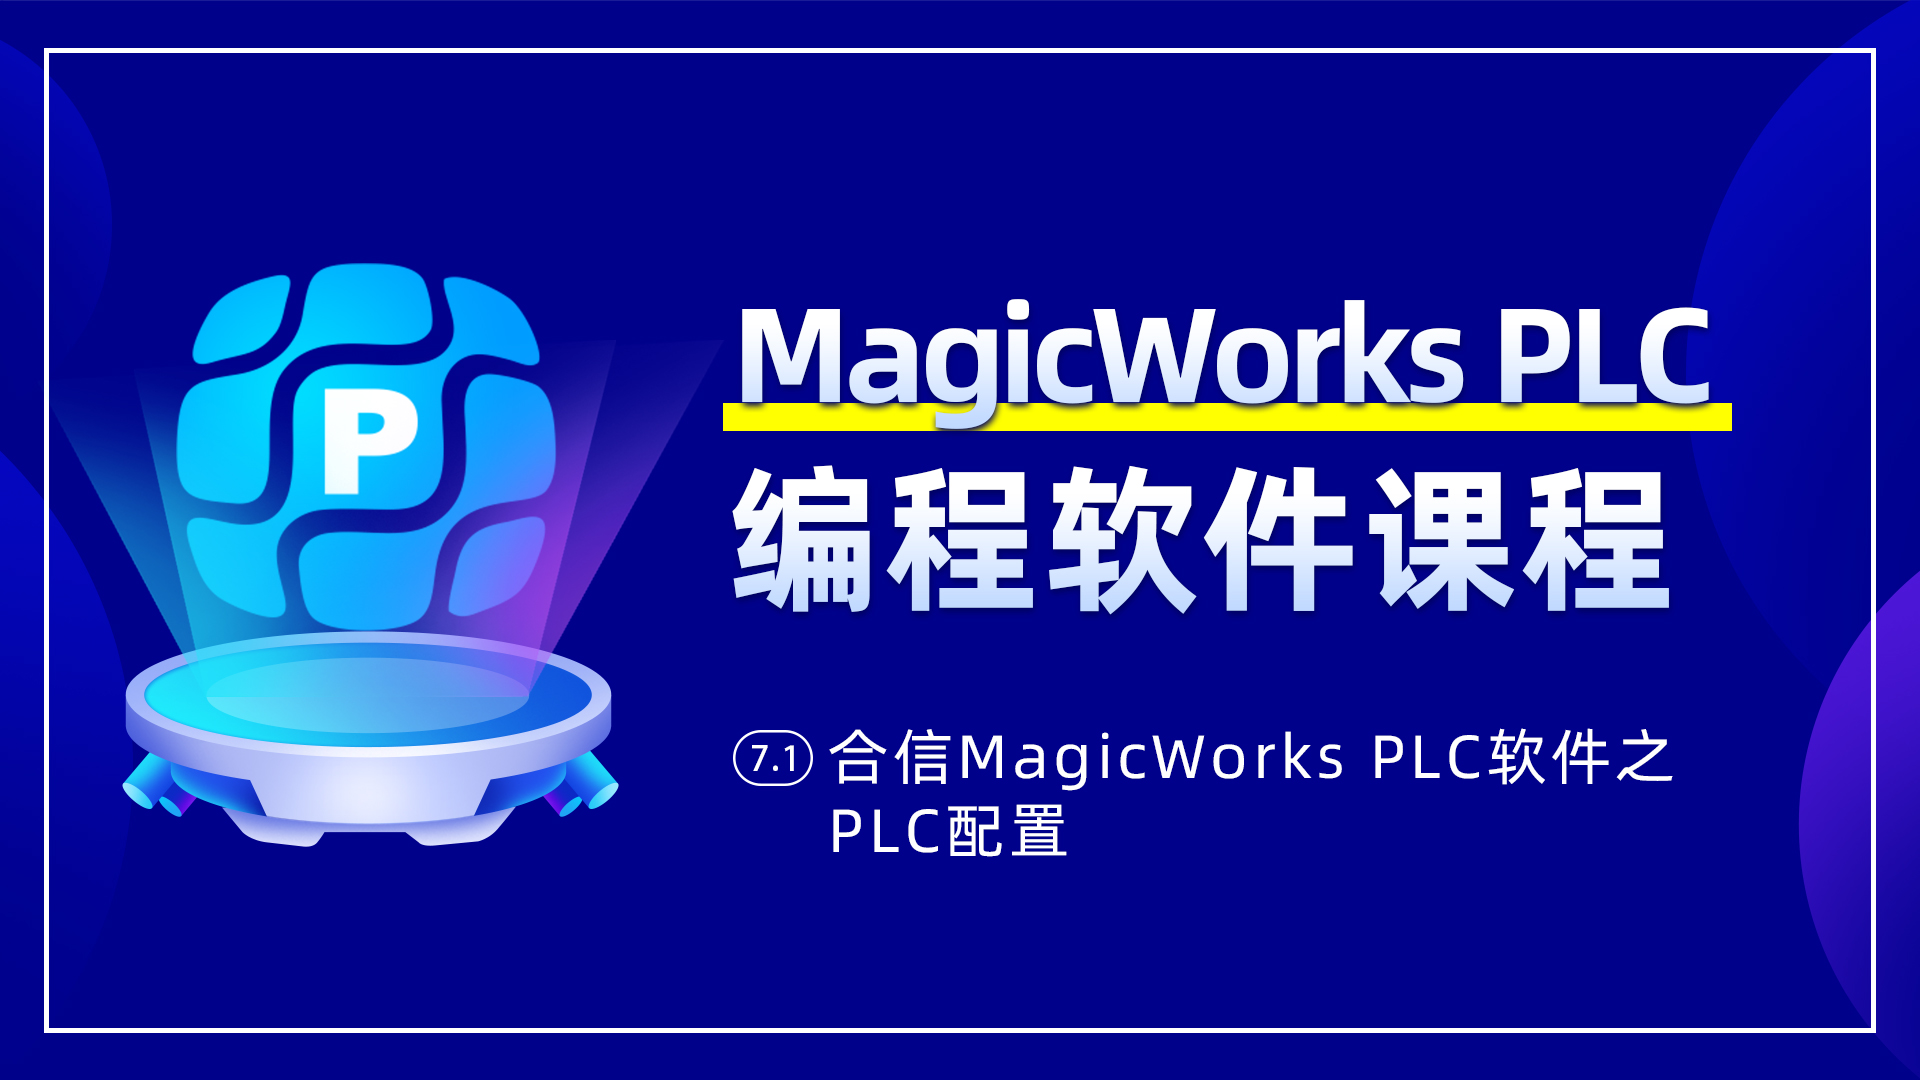 7.1、合信MagicWorks PLC軟件PLC配置之系統塊配置